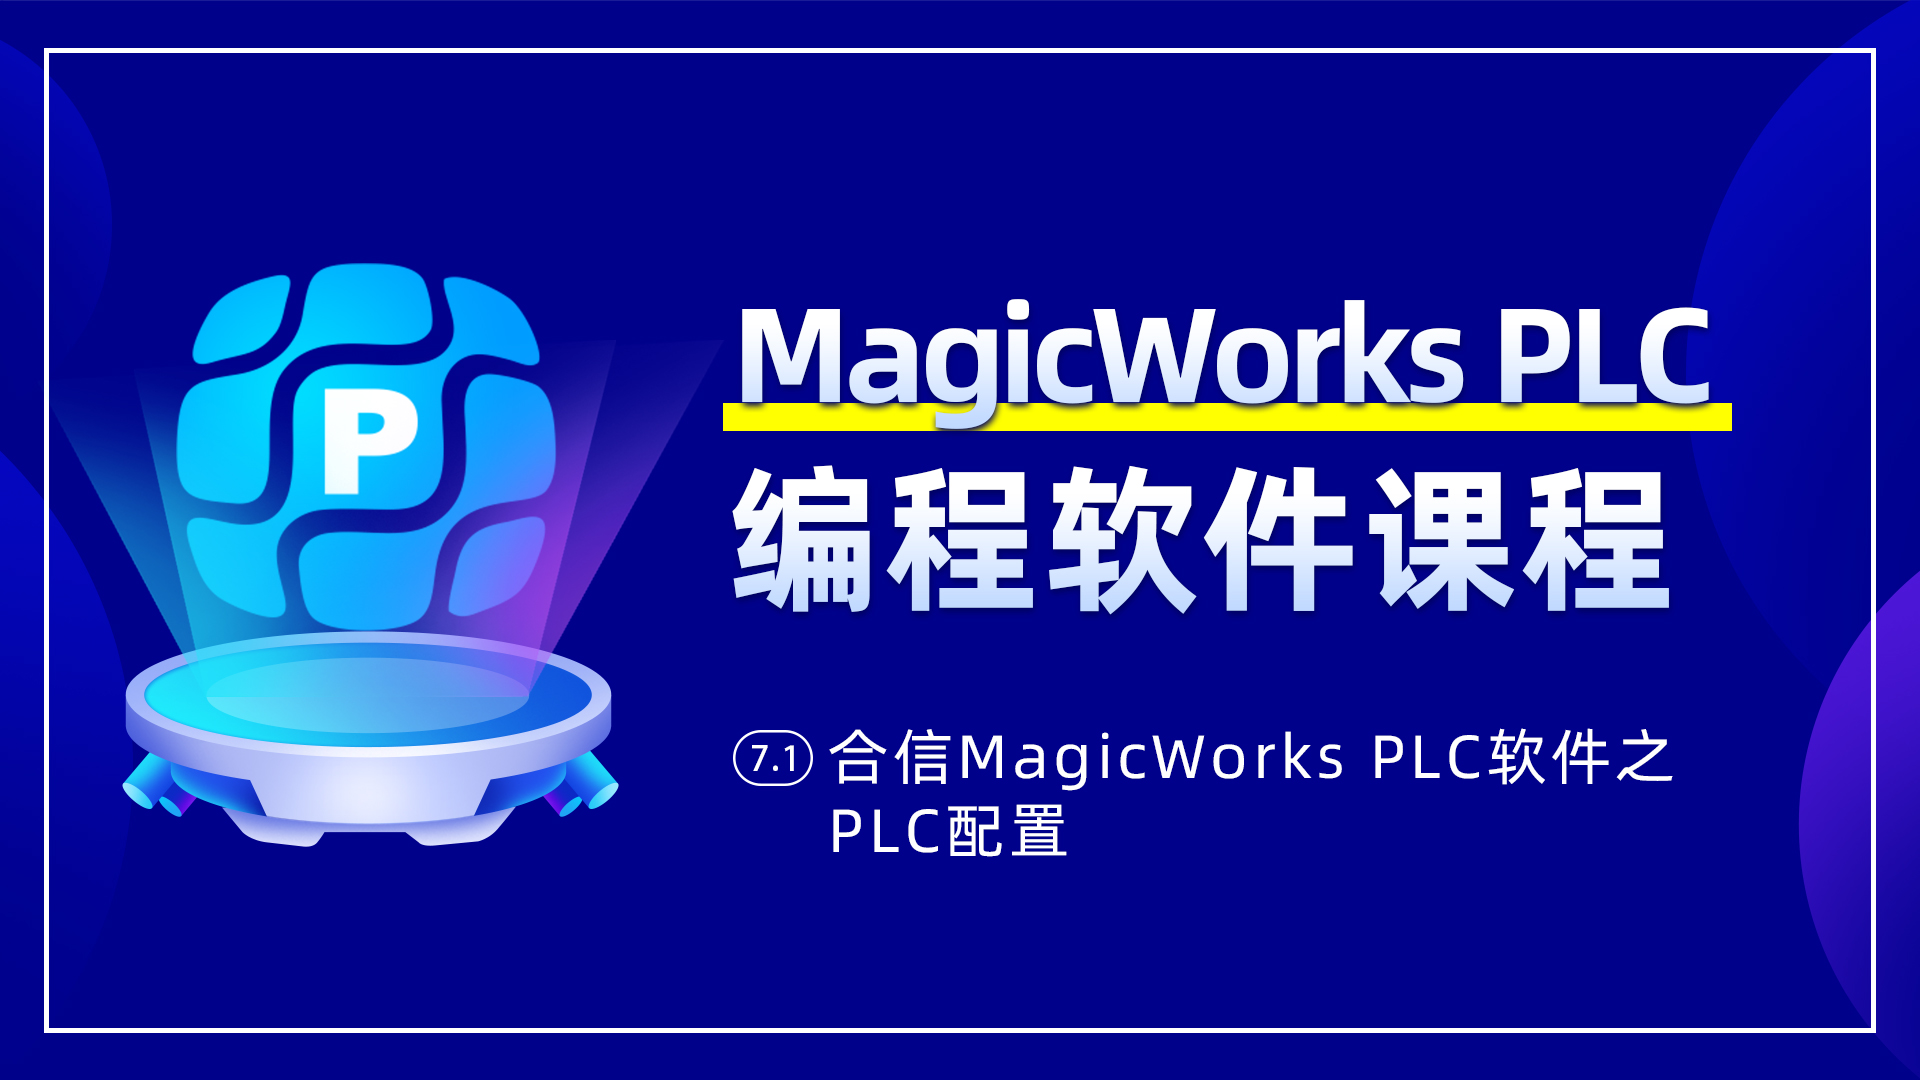 7.1、合信MagicWorks PLC軟件PLC配置之系統塊配置